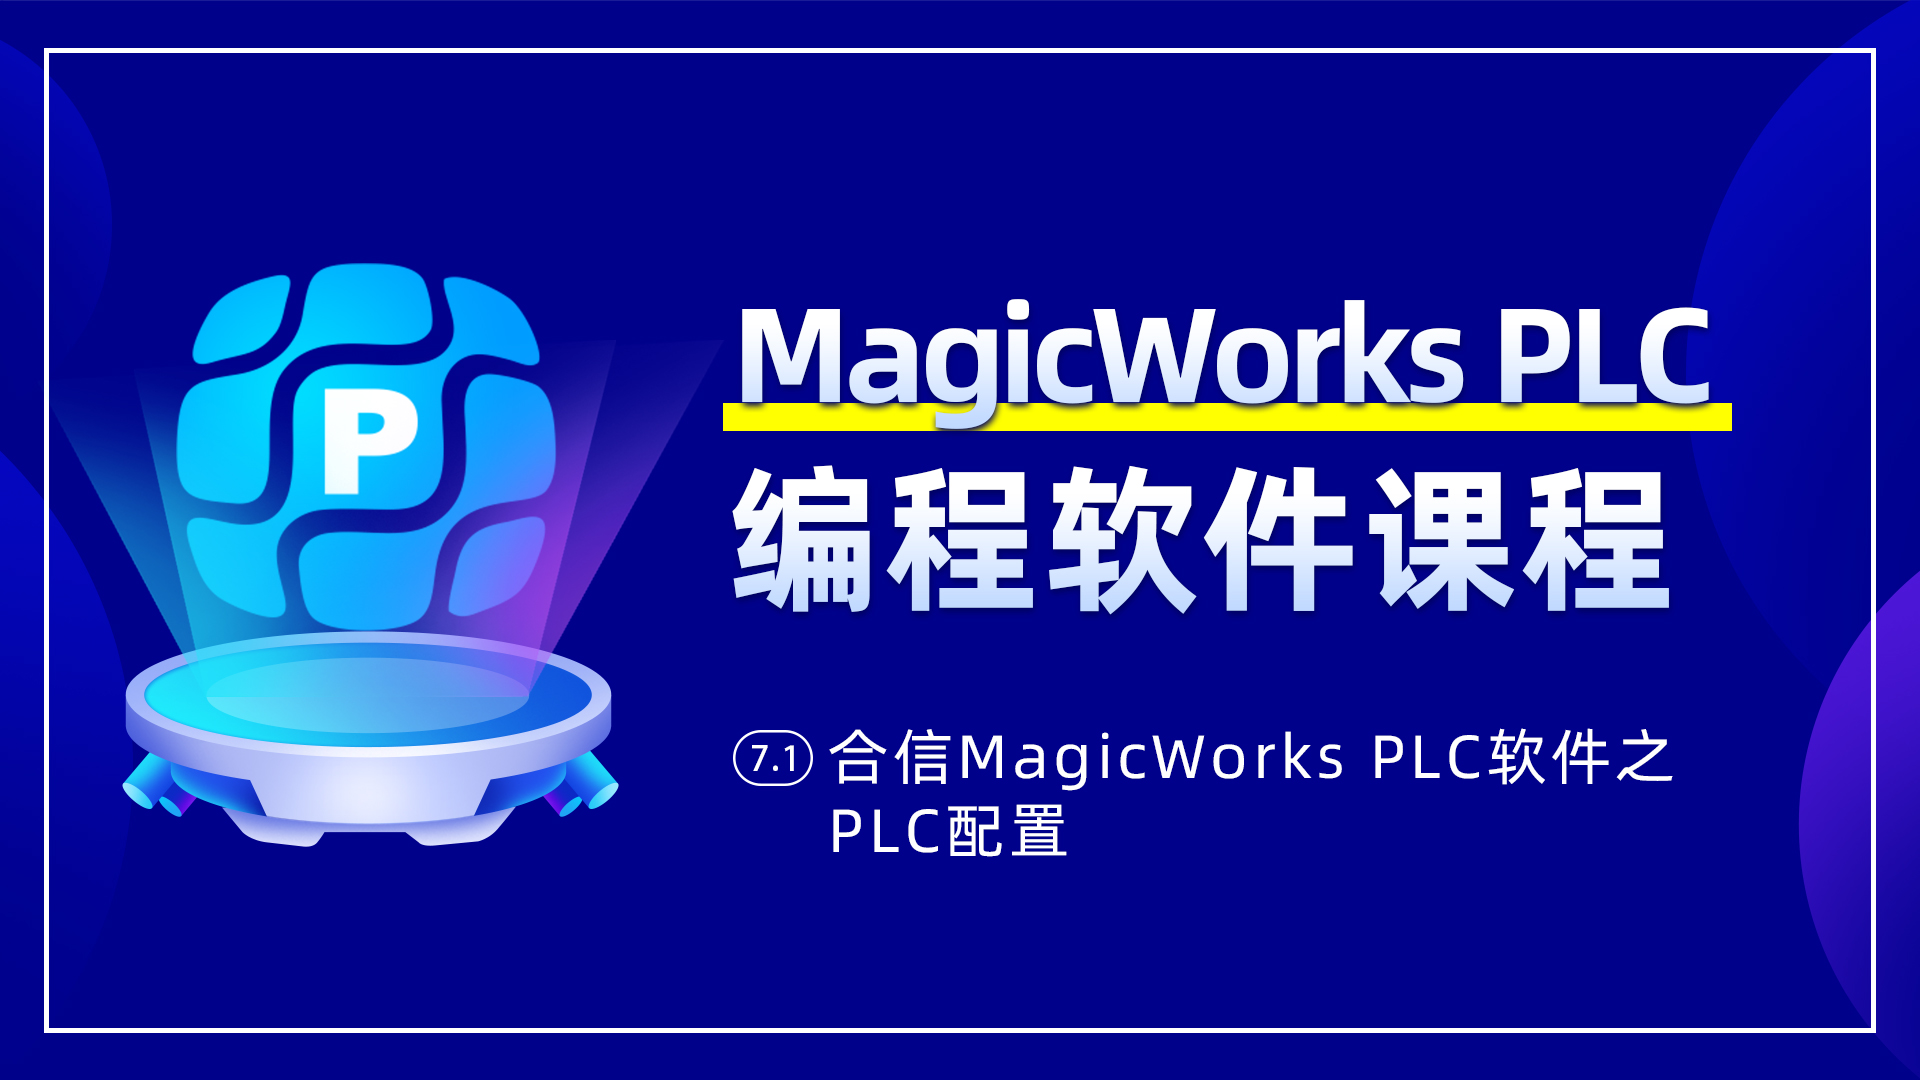 7.1、合信MagicWorks PLC軟件PLC配置之系統塊配置